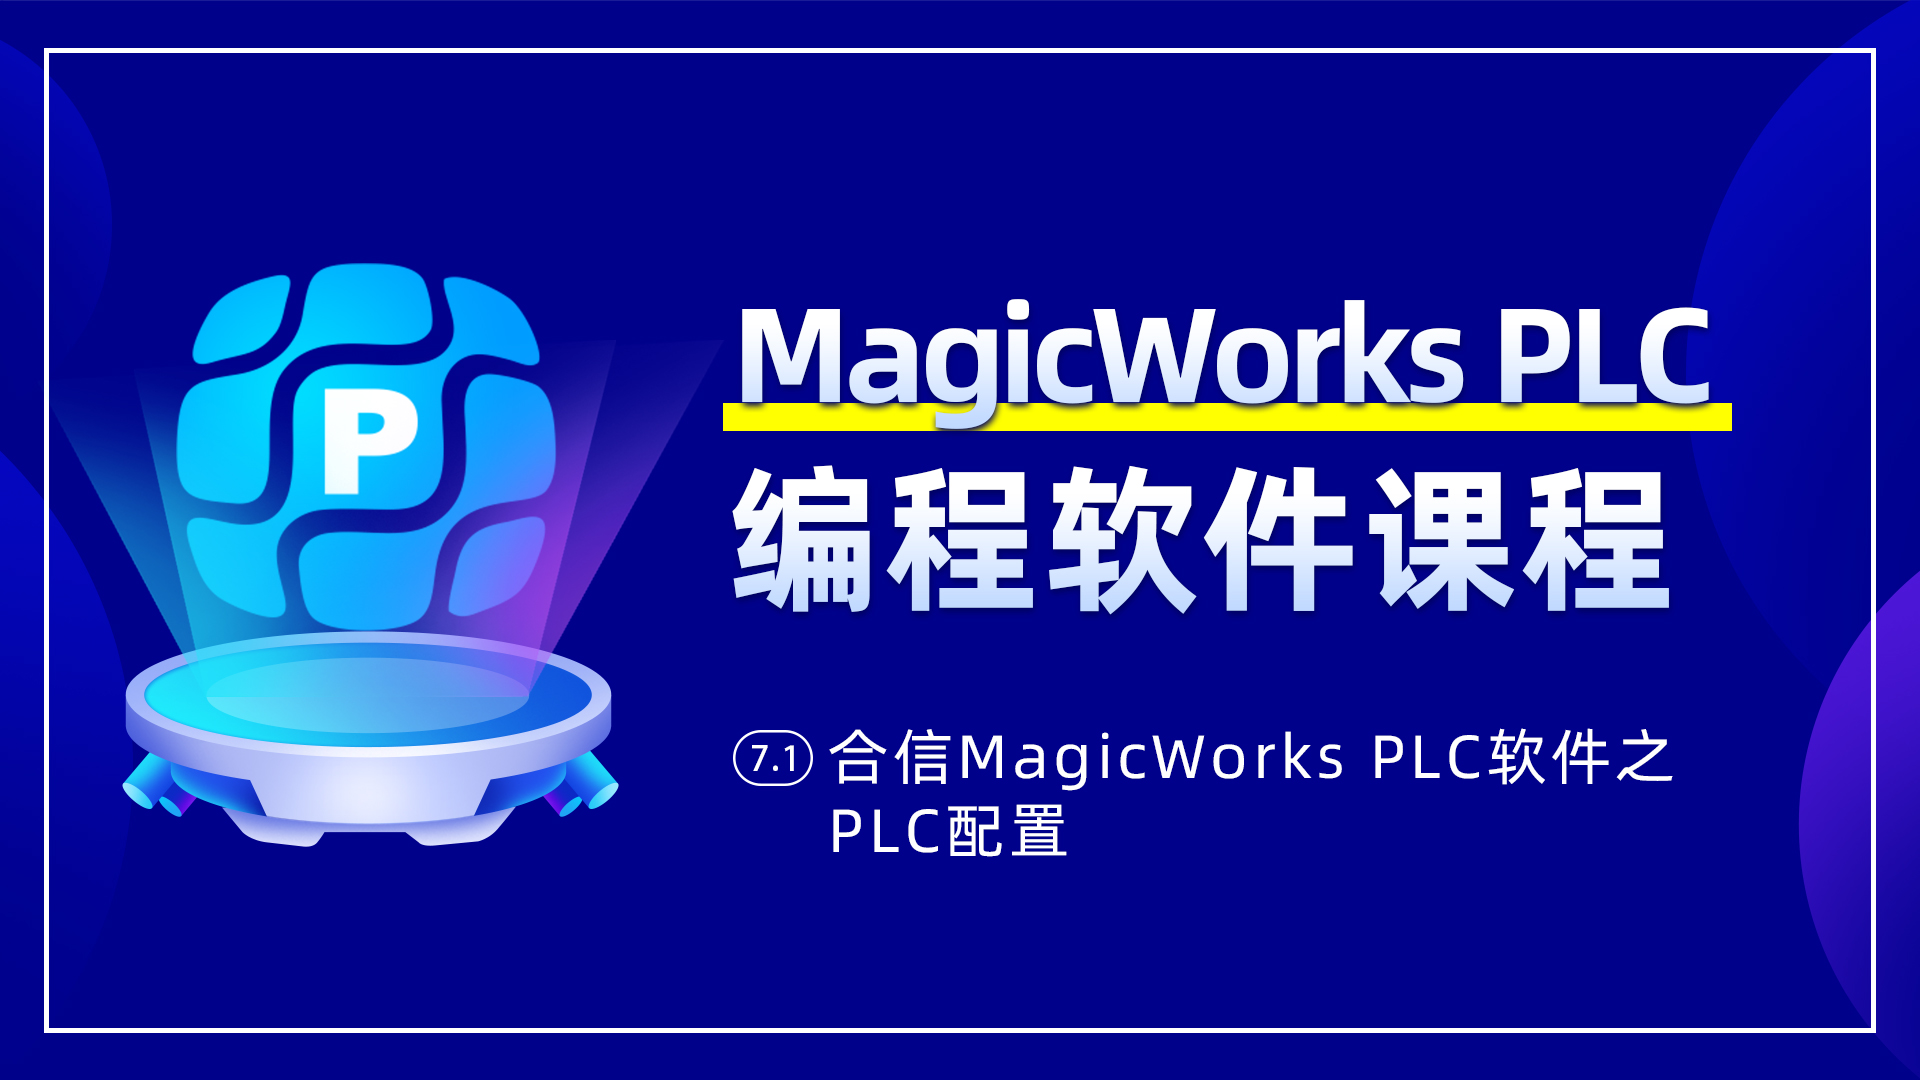 7.1、合信MagicWorks PLC軟件PLC配置之系統塊配置